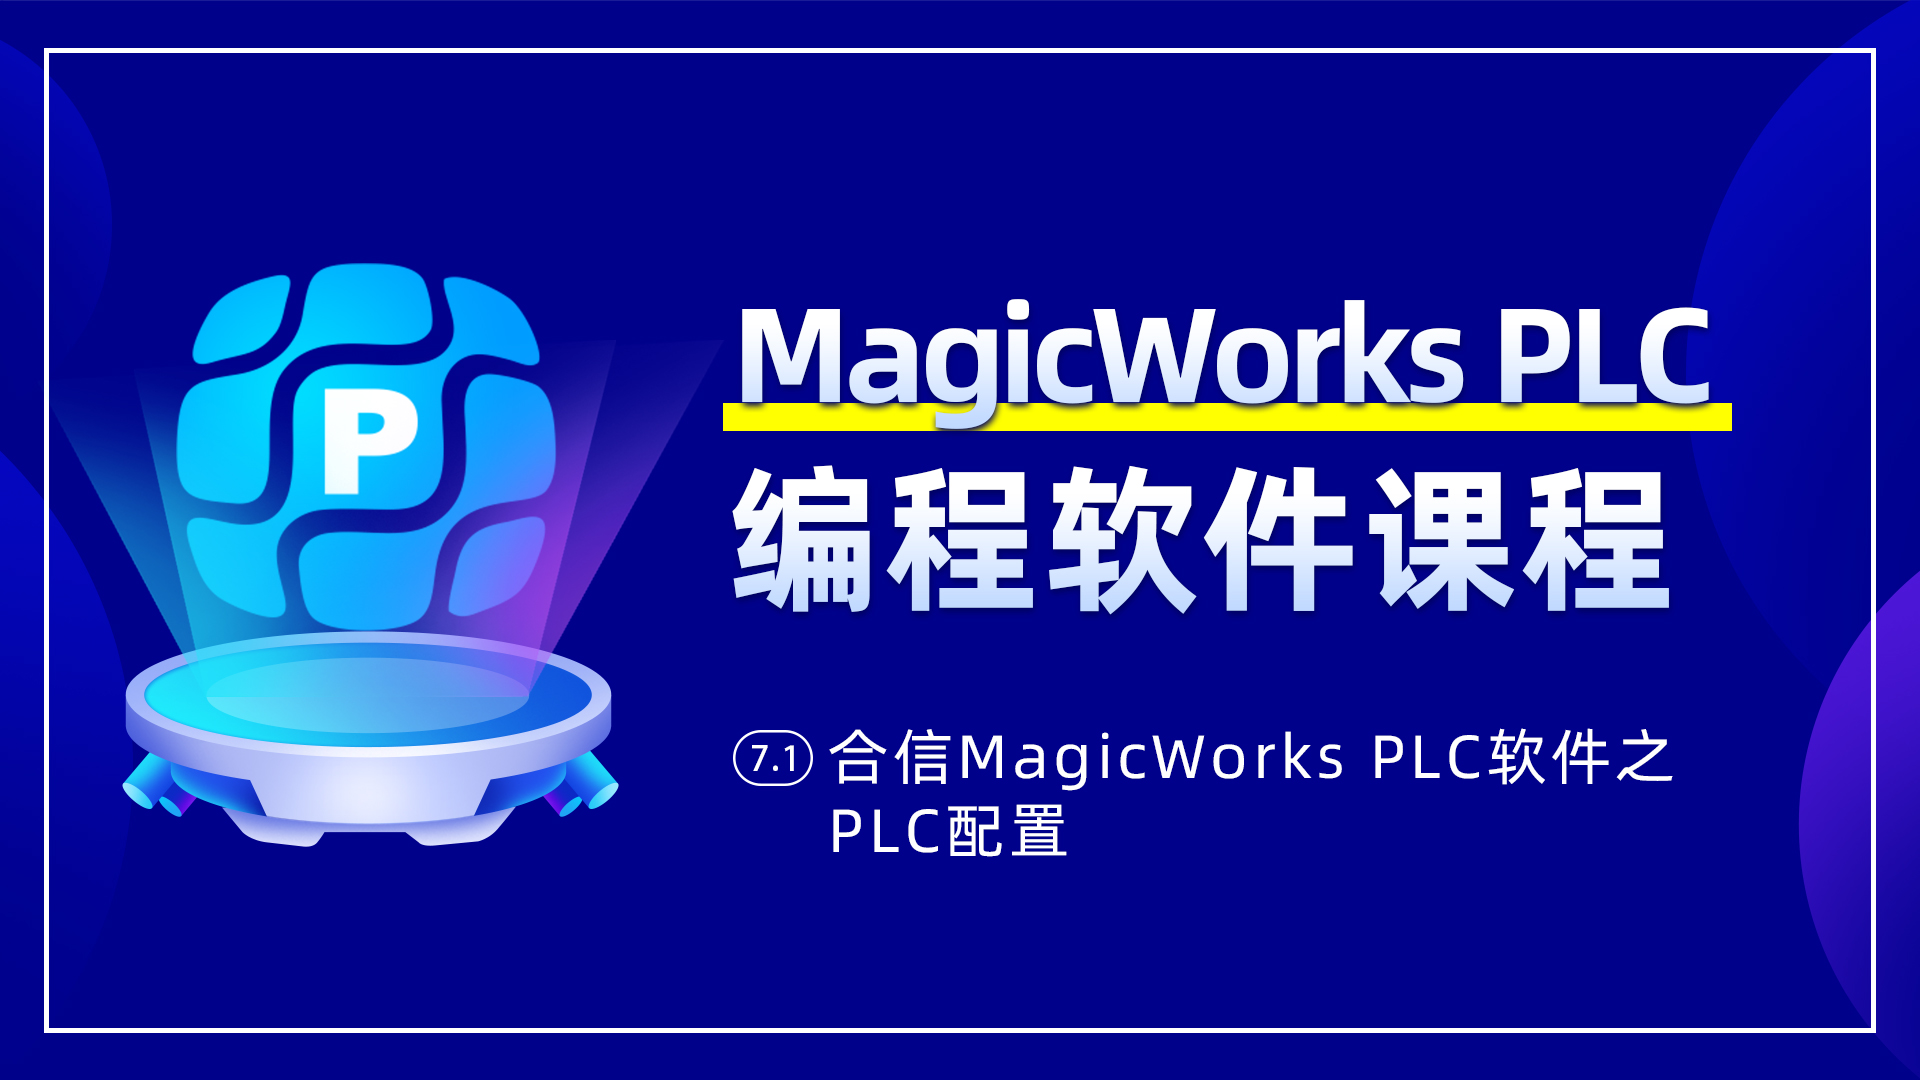 7.1、合信MagicWorks PLC軟件PLC配置之系統塊配置